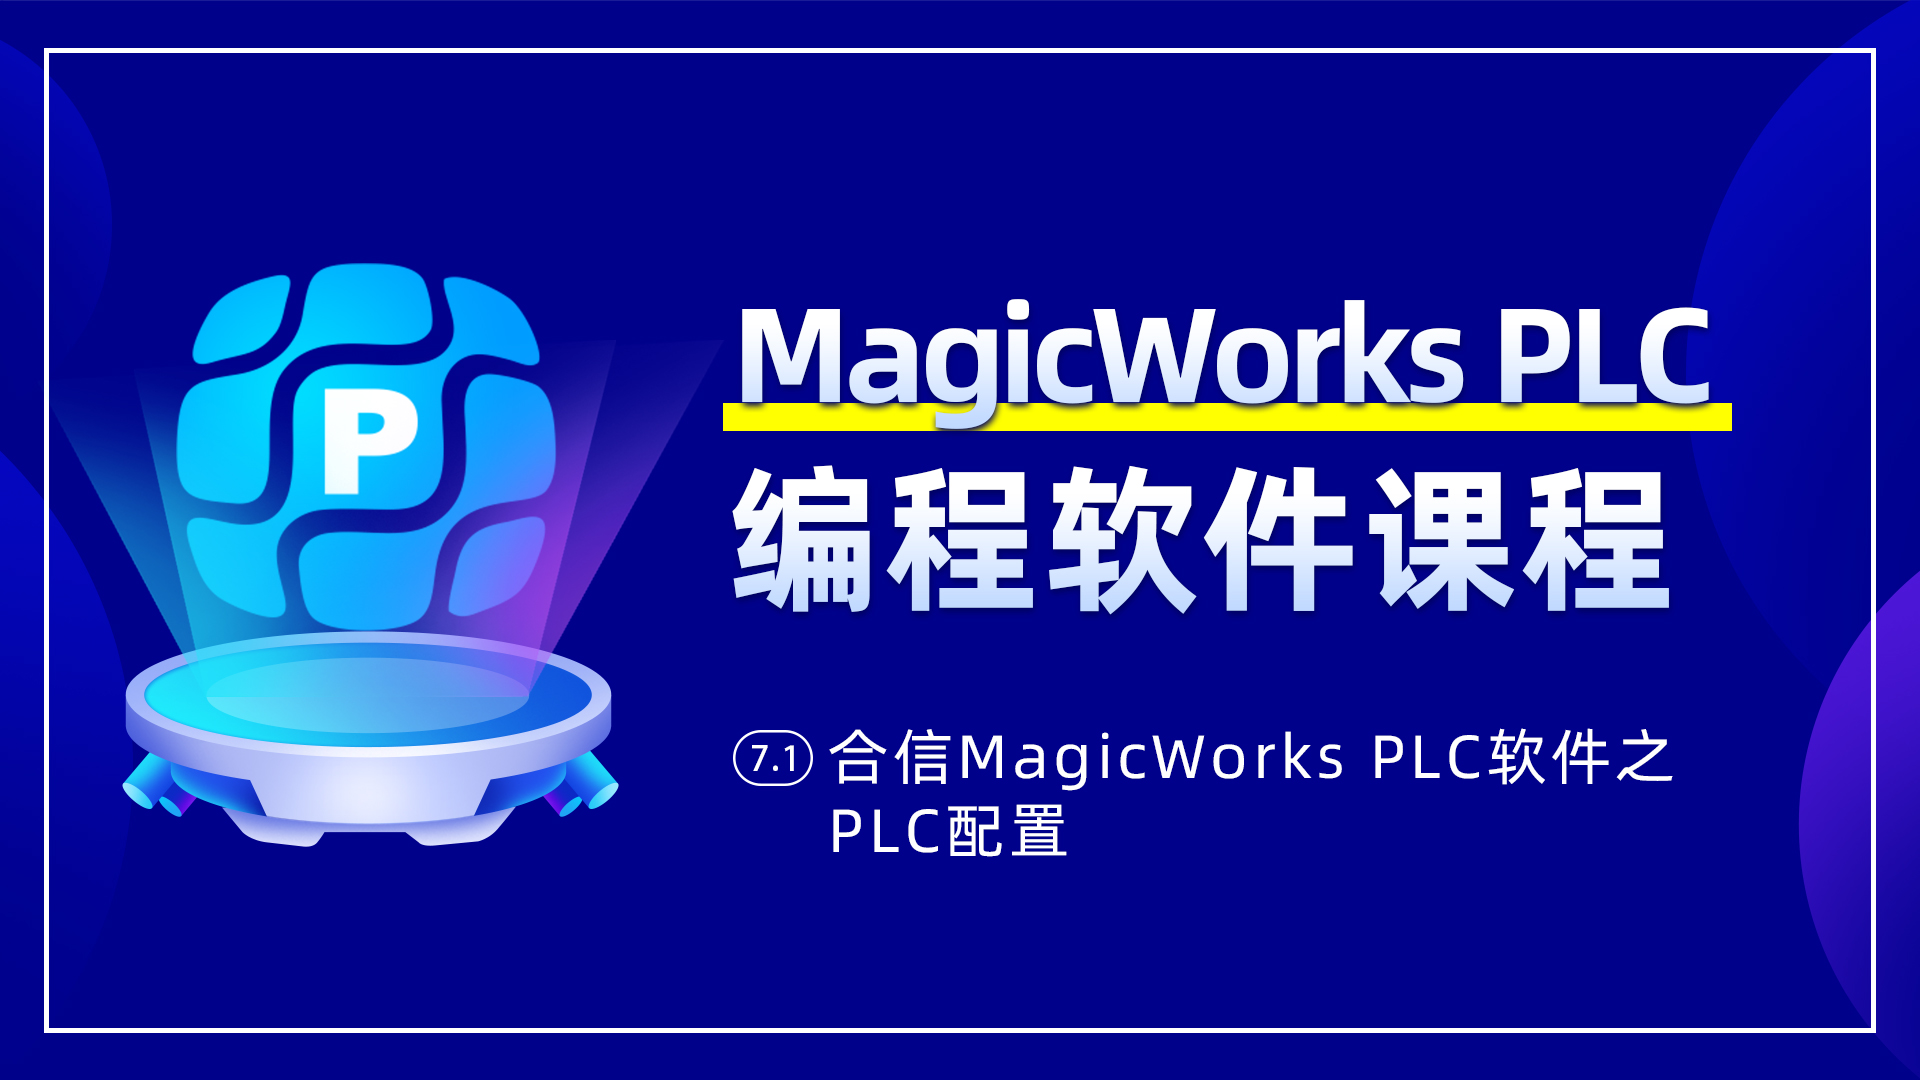 7.1、合信MagicWorks PLC軟件PLC配置之系統塊配置